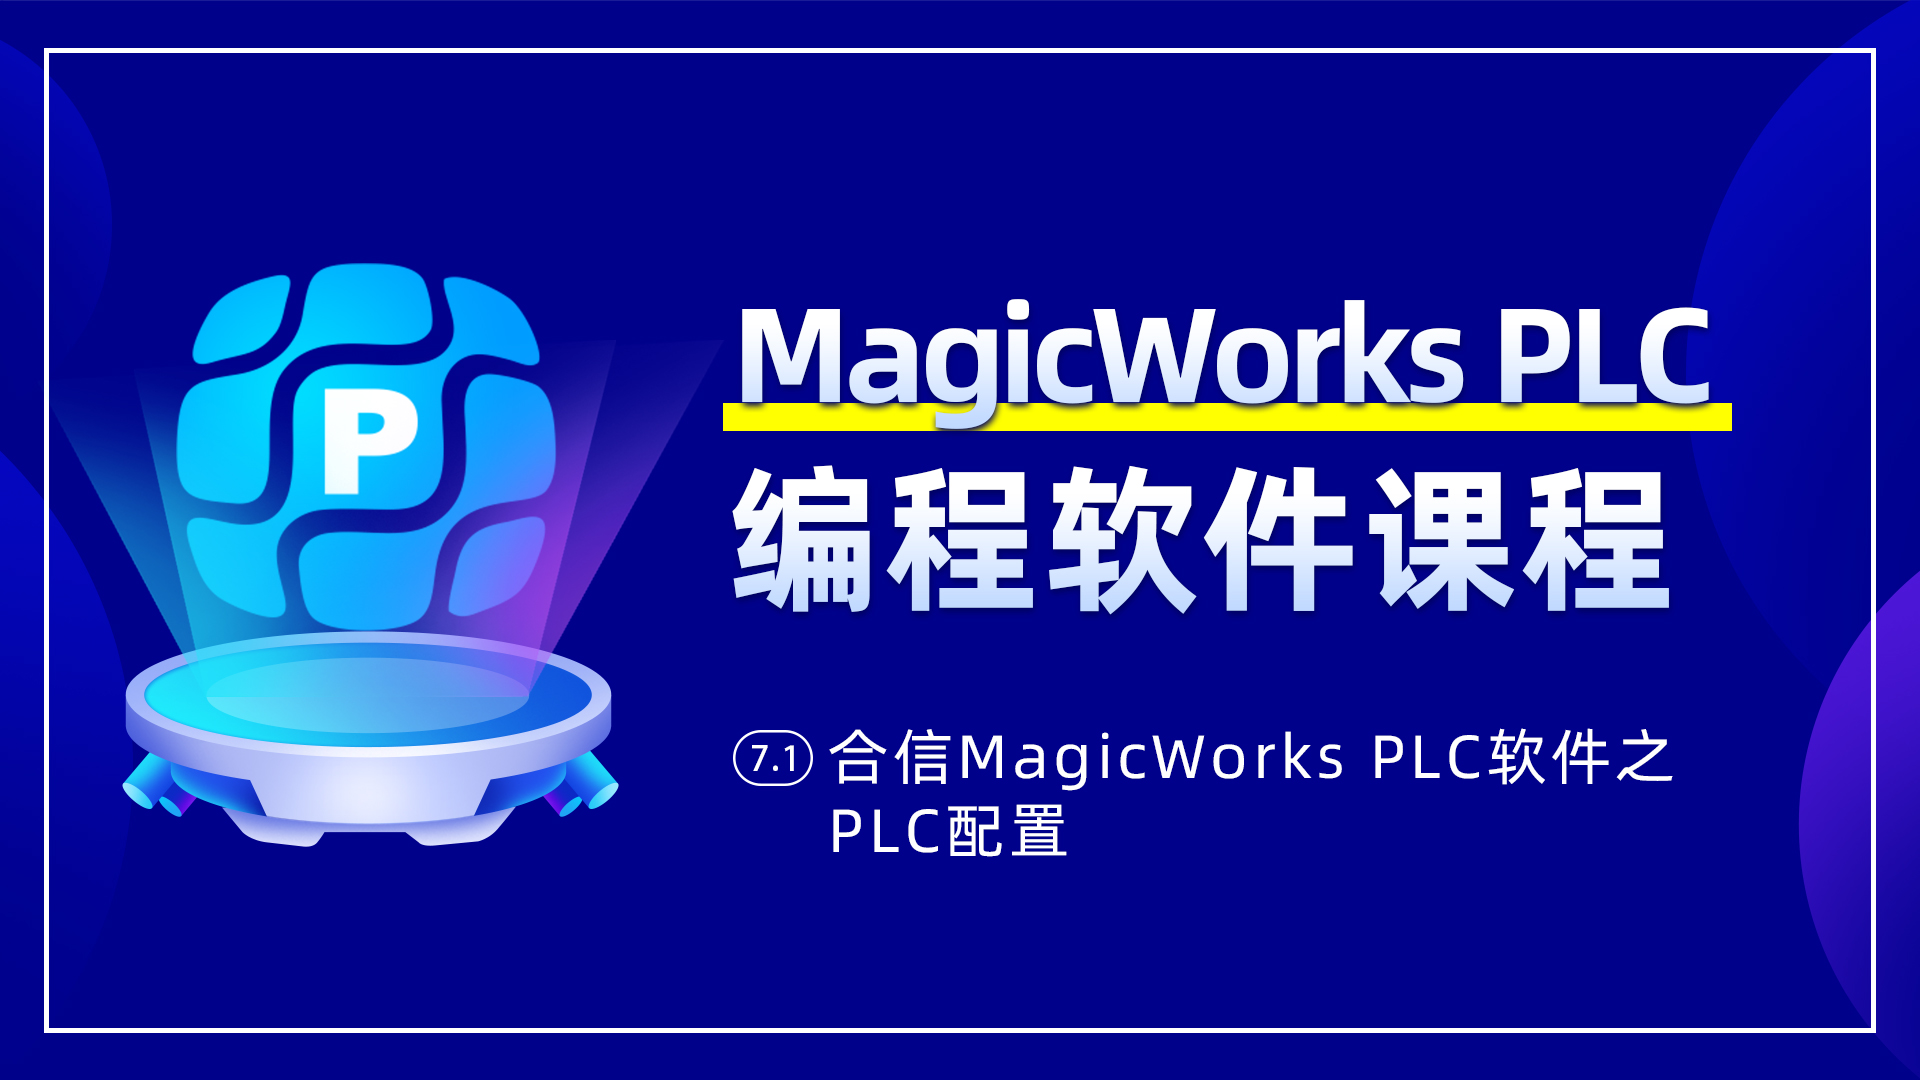 7.1、合信MagicWorks PLC軟件PLC配置之系統塊配置